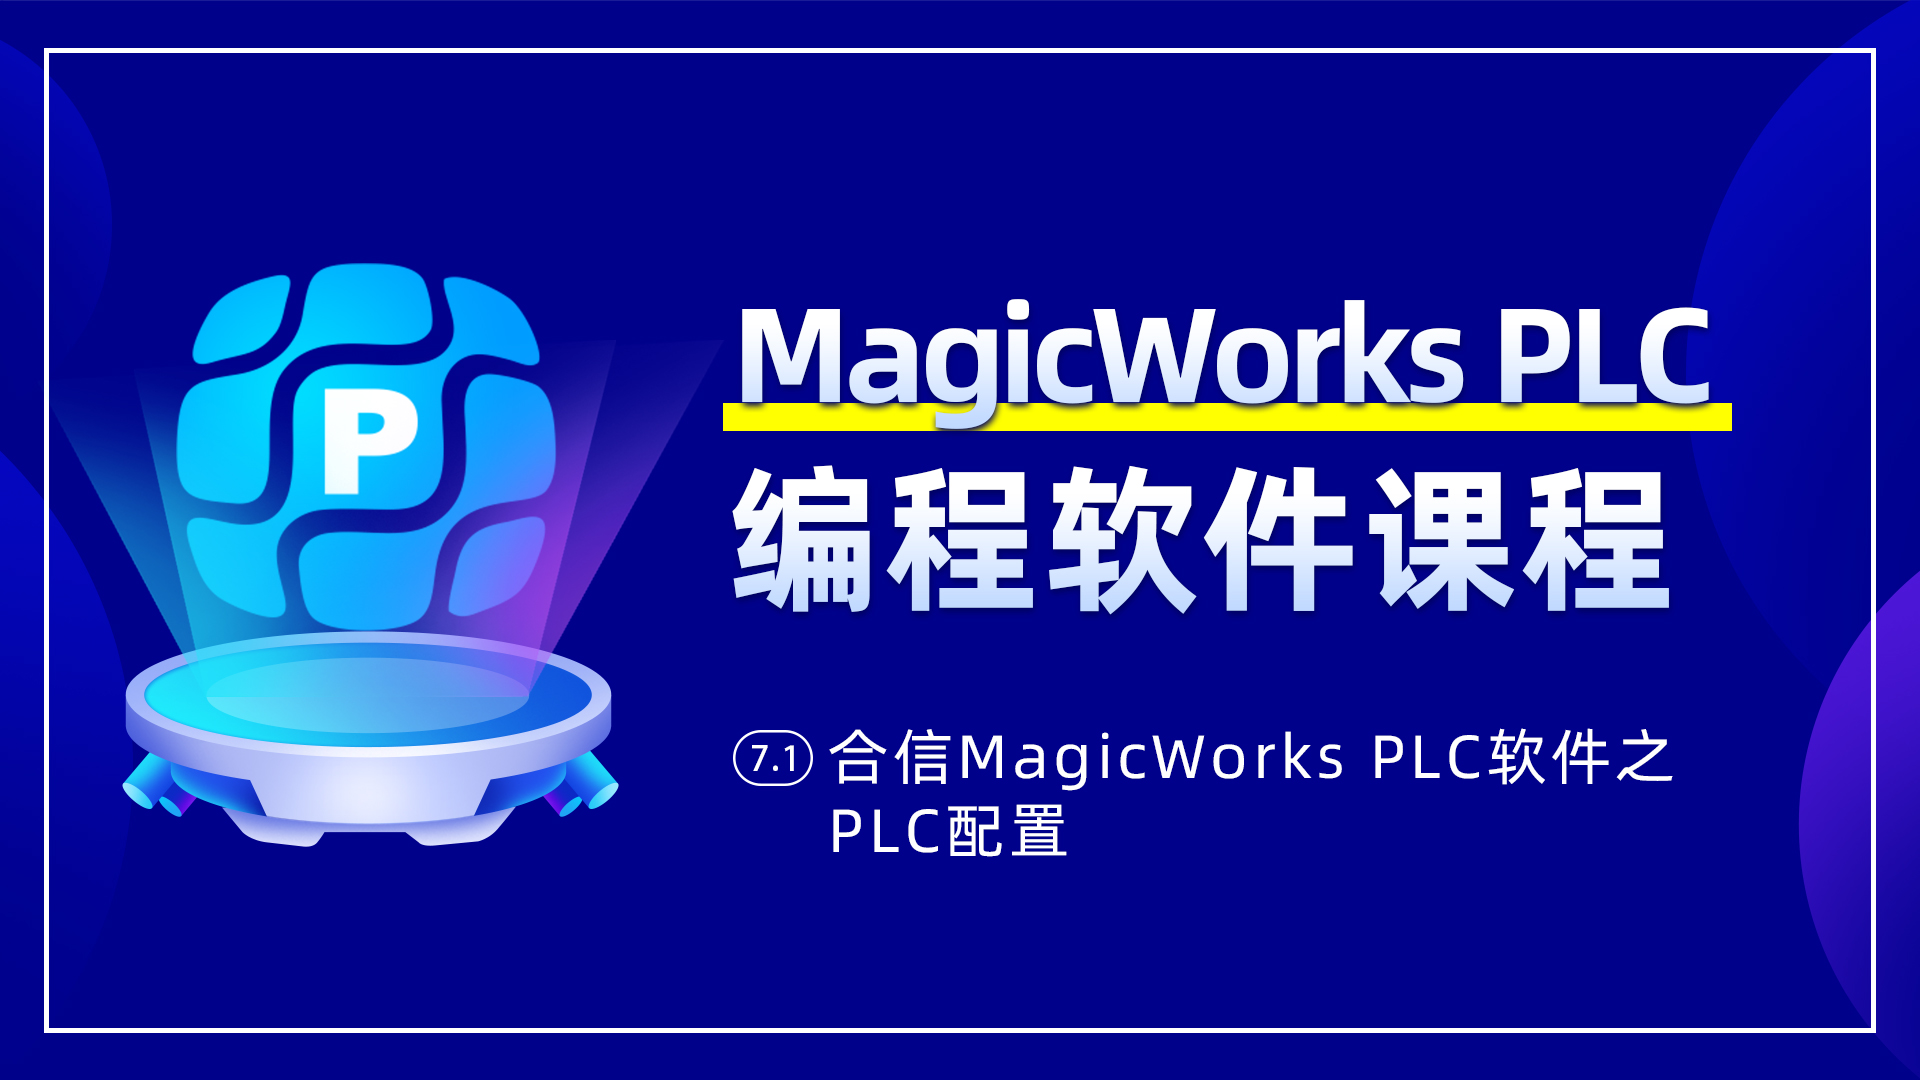 7.1、合信MagicWorks PLC軟件PLC配置之系統塊配置